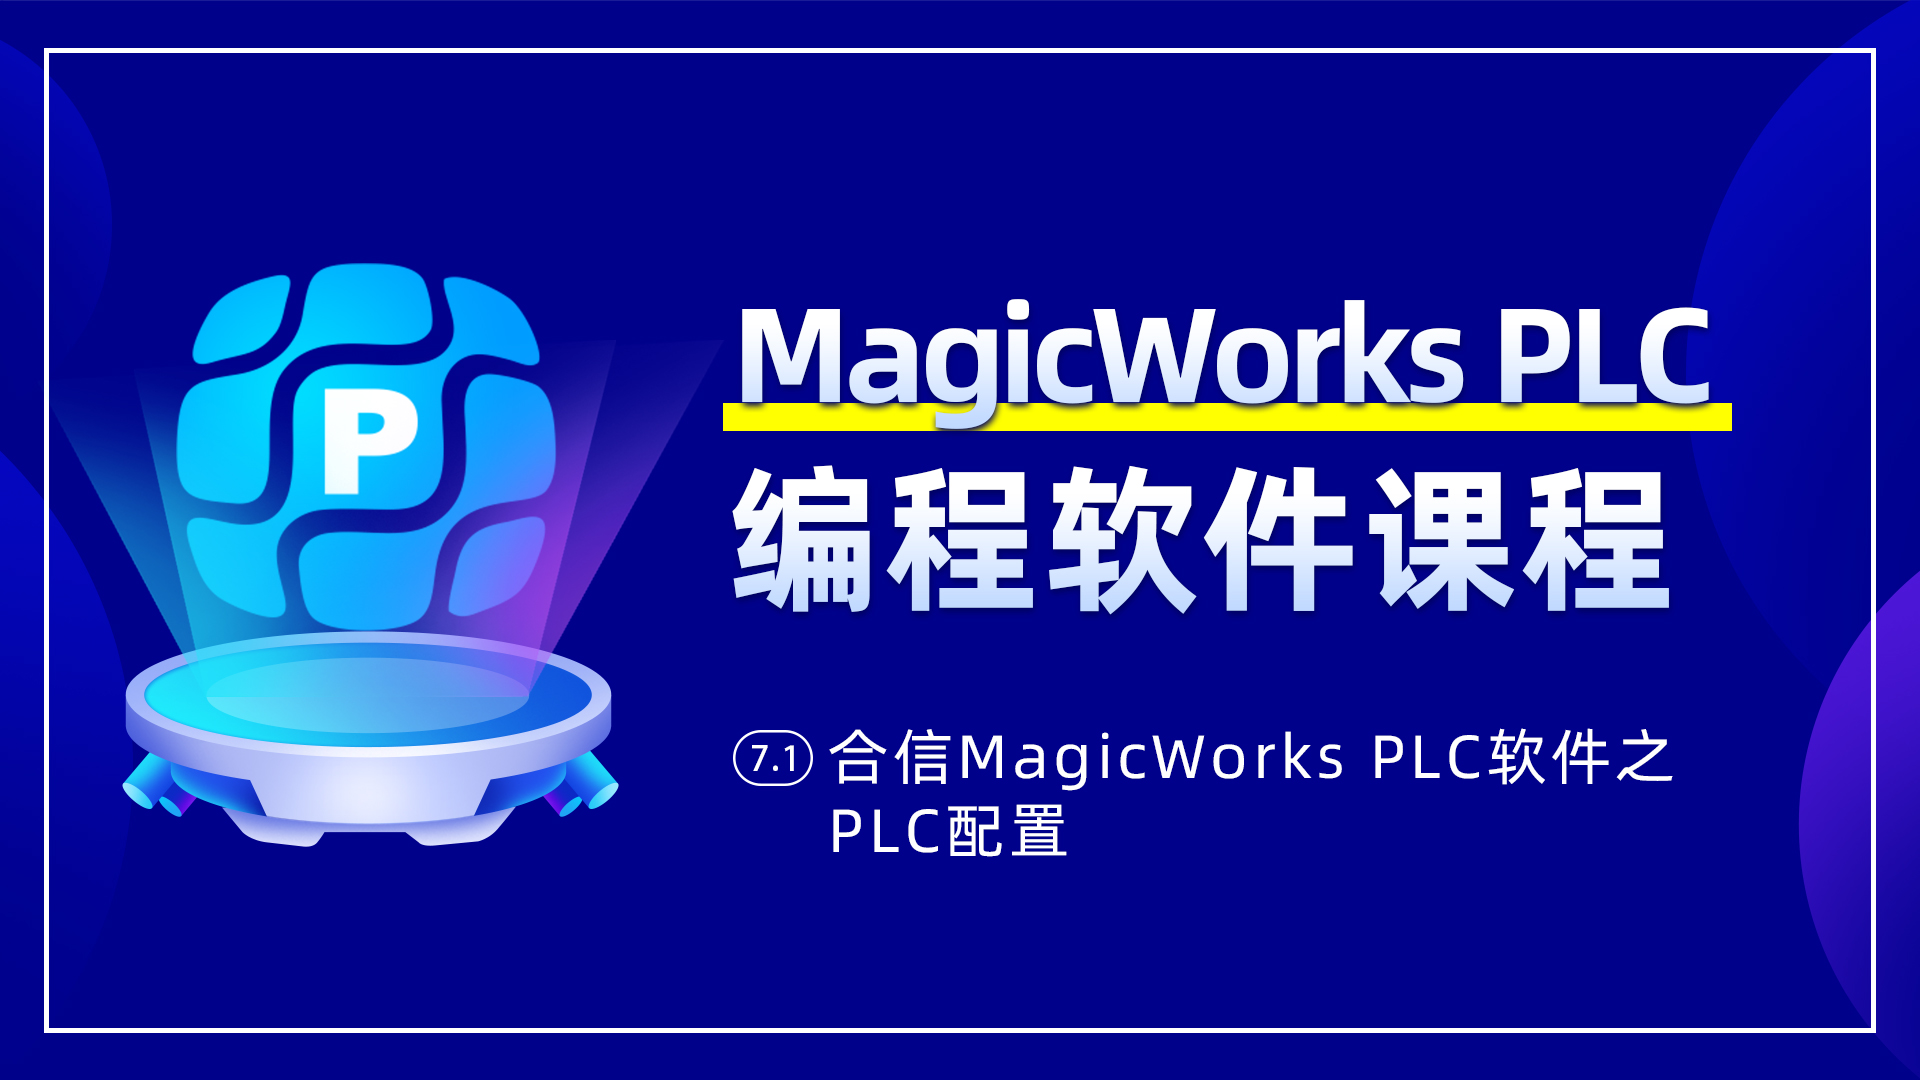 7.1、合信MagicWorks PLC軟件PLC配置之系統塊配置